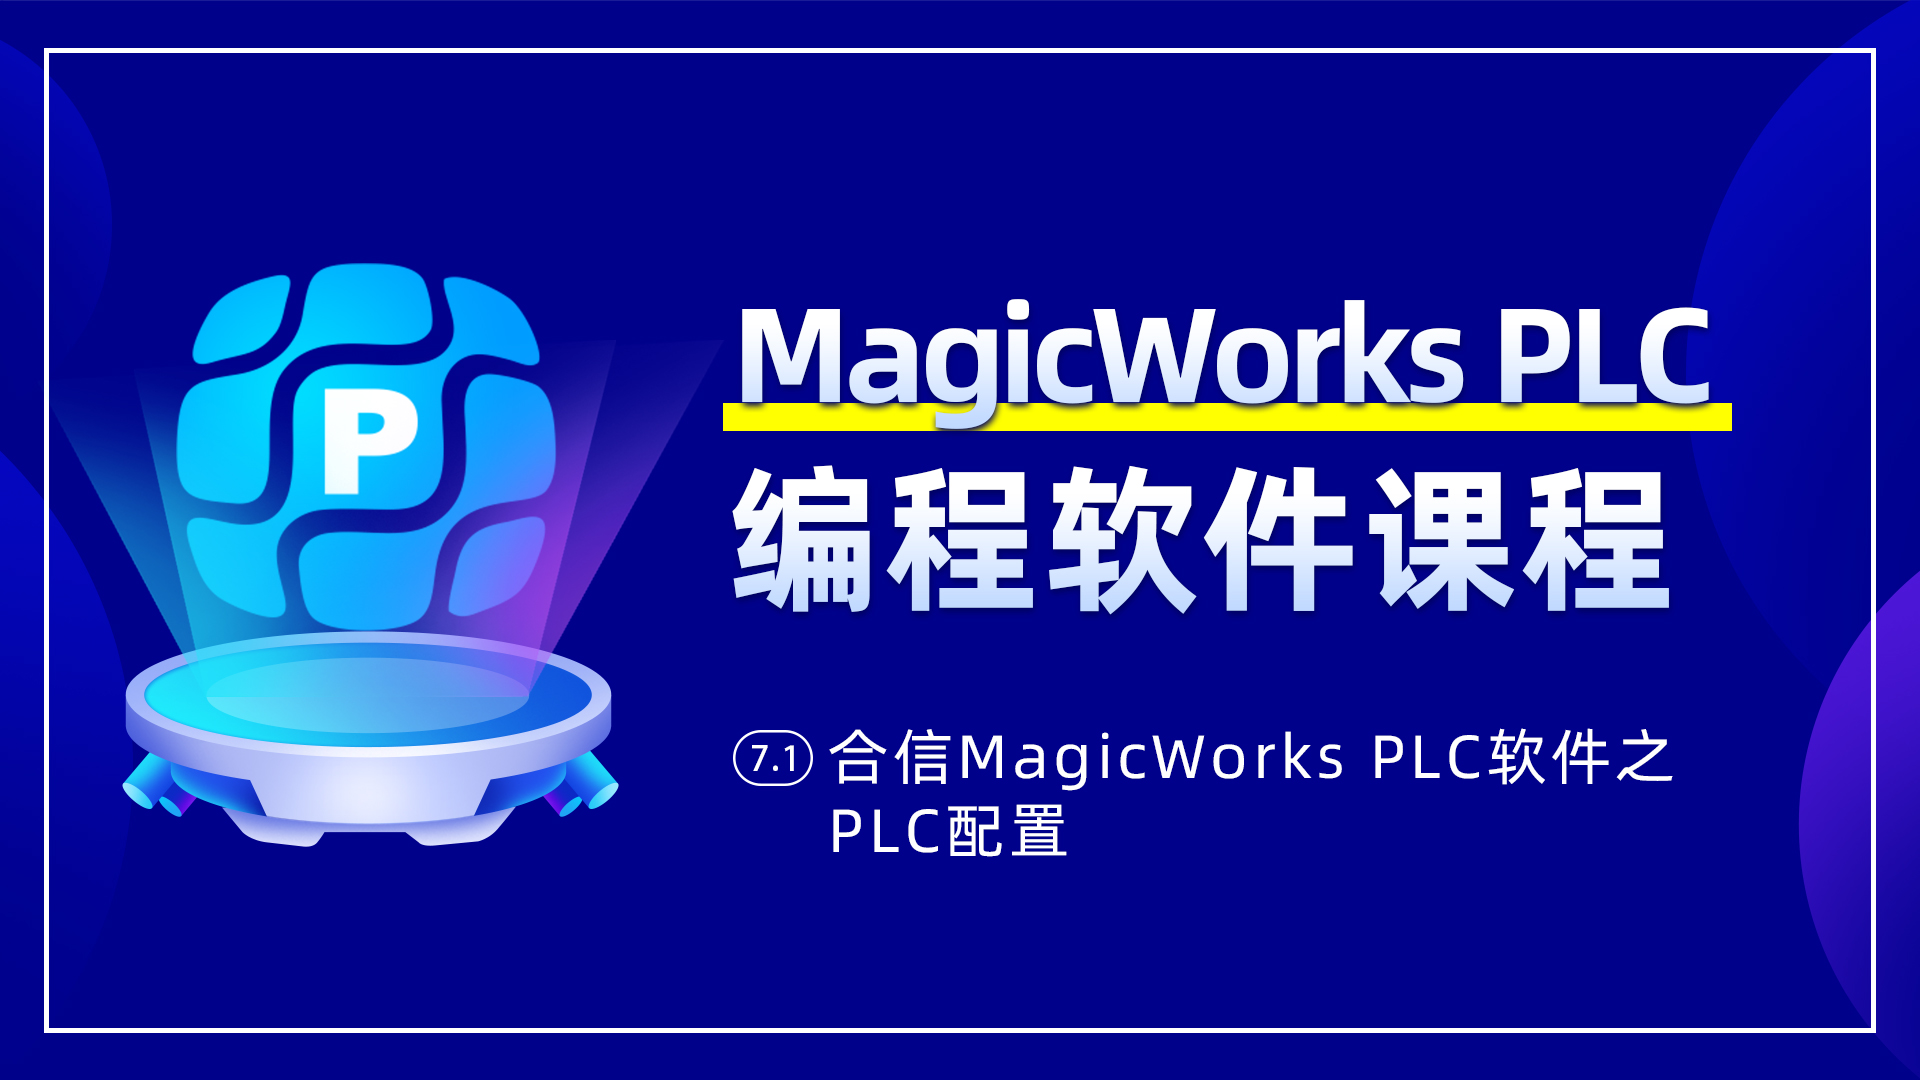 7.1、合信MagicWorks PLC軟件PLC配置之系統塊配置